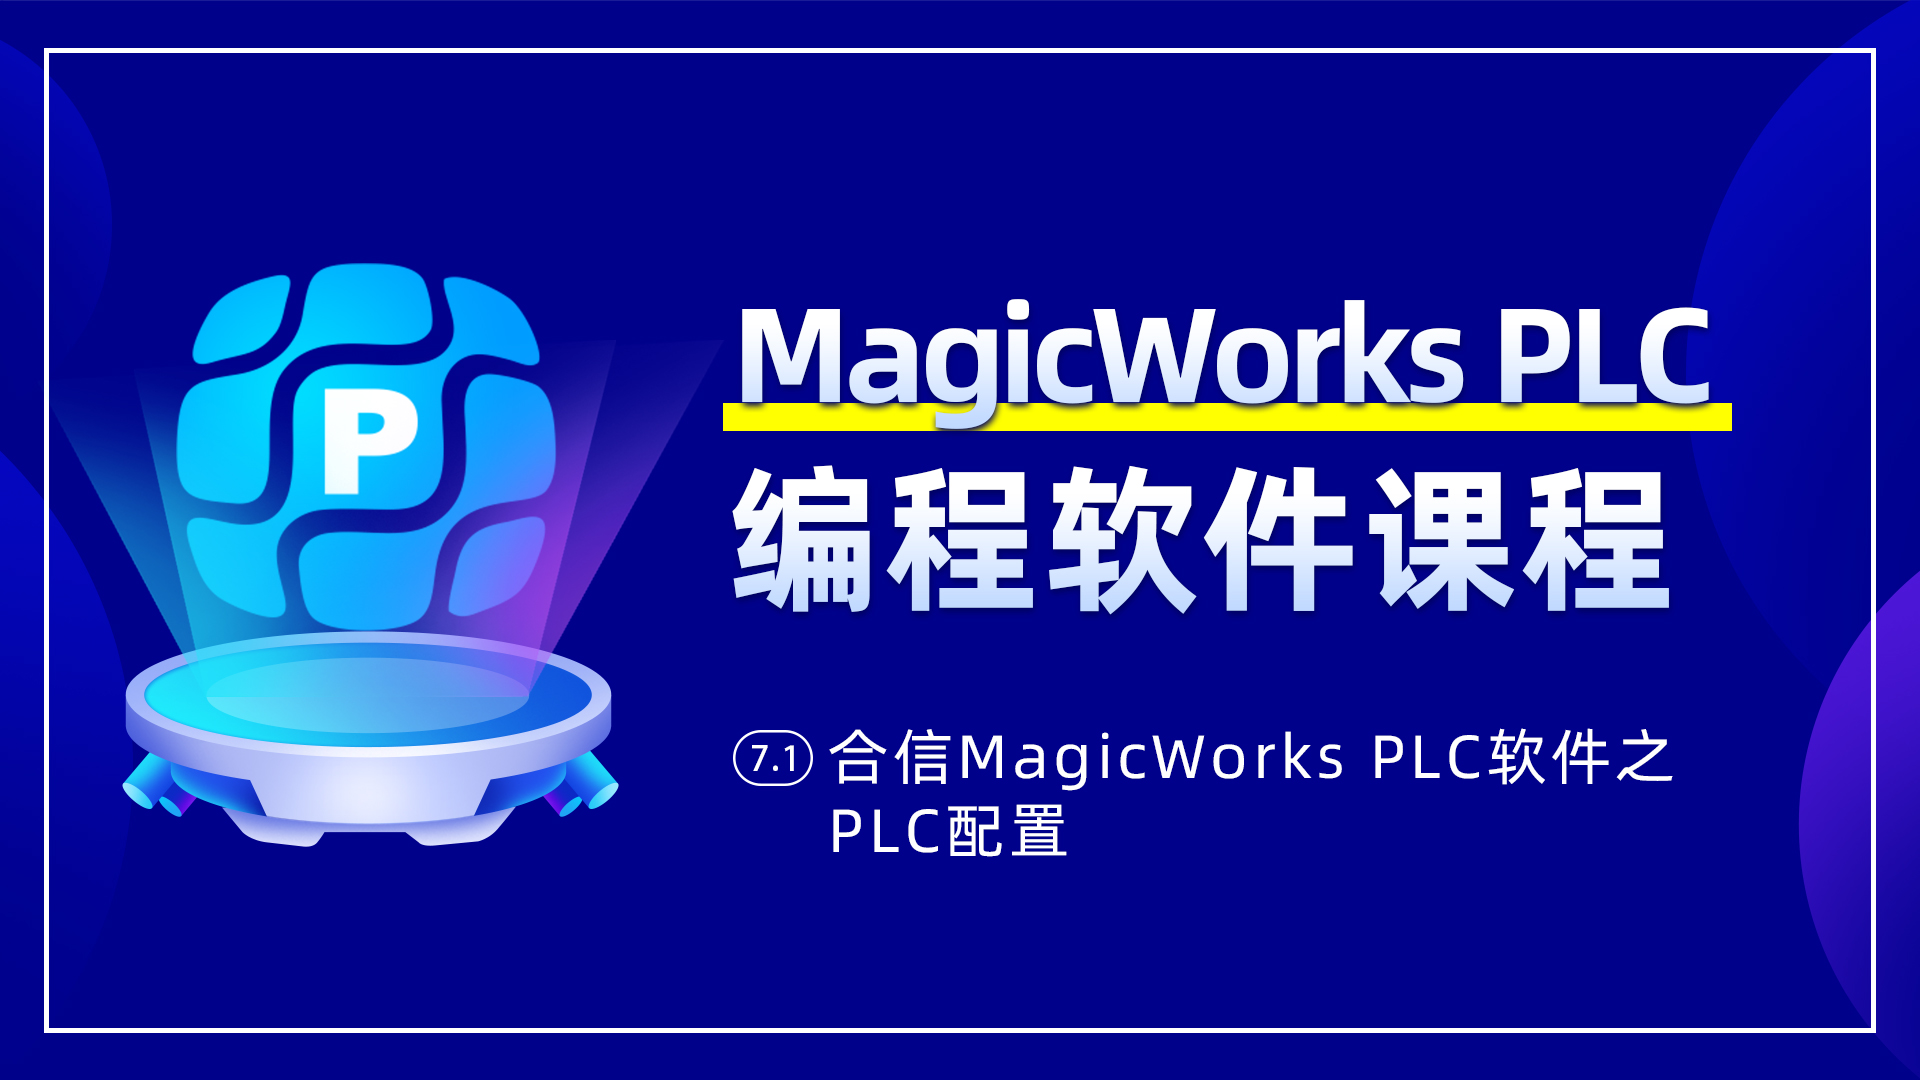 7.1、合信MagicWorks PLC軟件PLC配置之系統塊配置